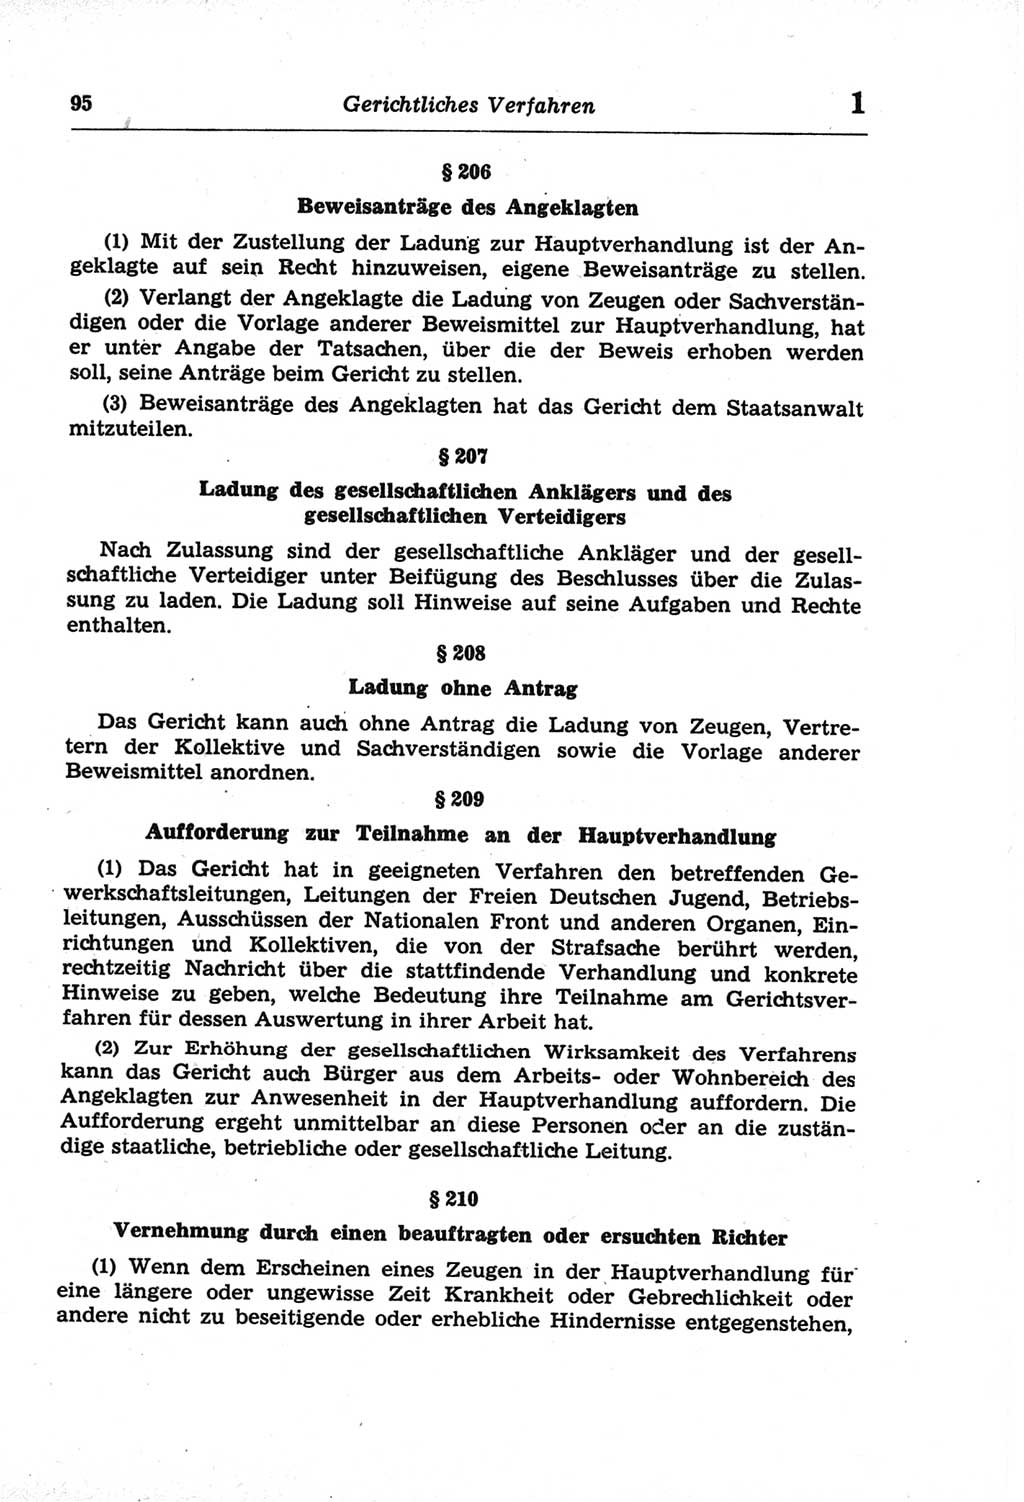 Strafprozeßordnung (StPO) der Deutschen Demokratischen Republik (DDR) und angrenzende Gesetze und Bestimmungen 1968, Seite 95 (StPO Ges. Bstgn. DDR 1968, S. 95)